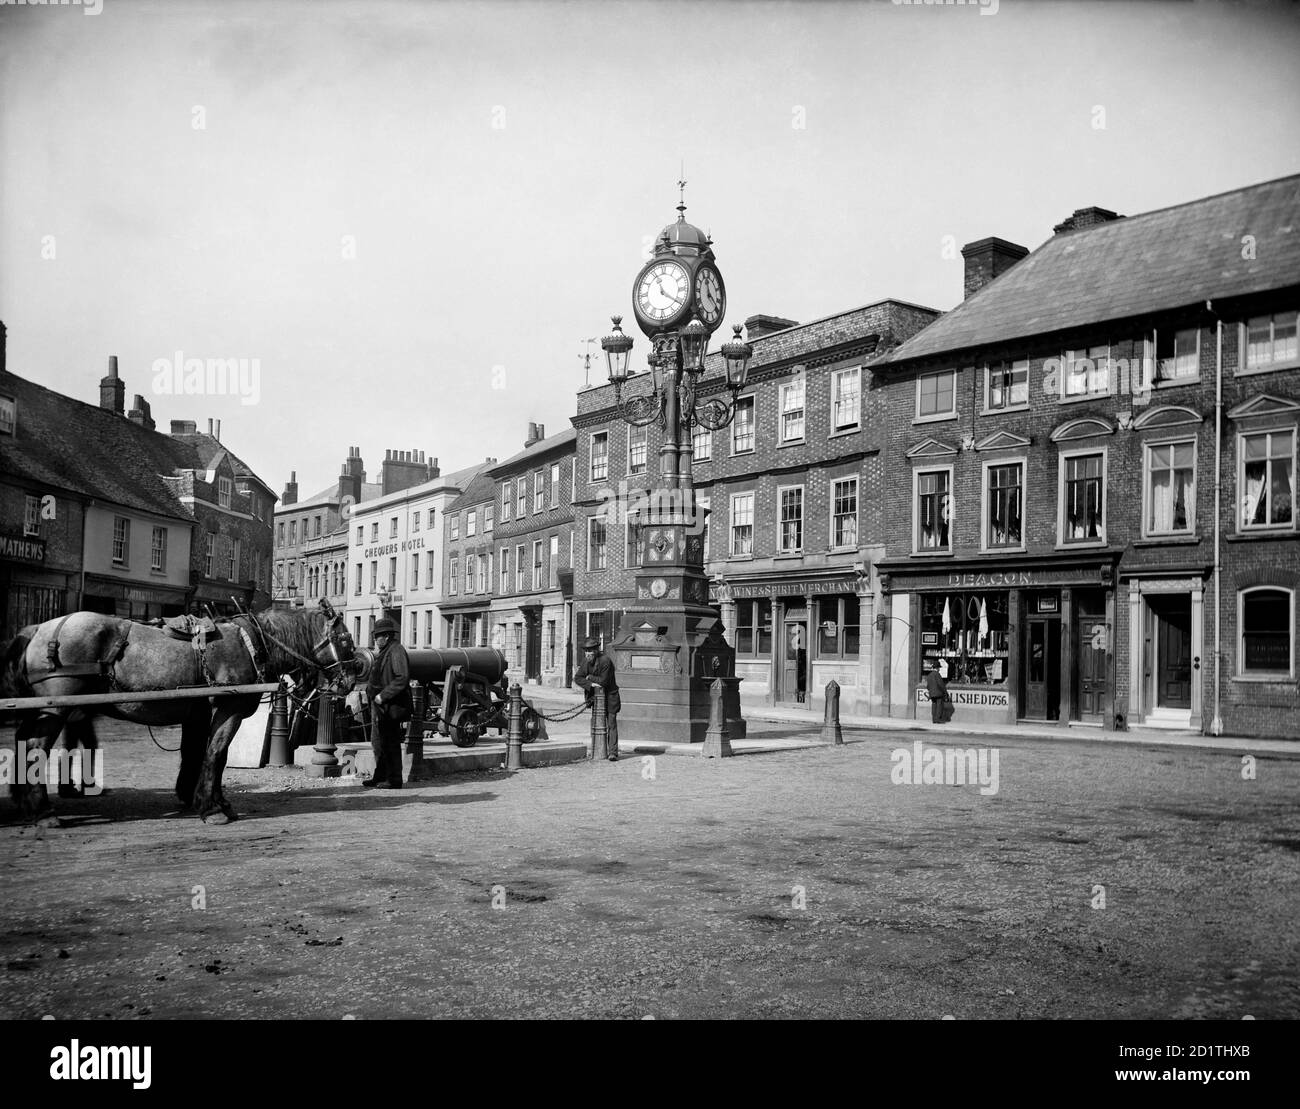 NEWBURY, Berkshire. L'horloge qui commémore le Jubilé d'or de la reine Victoria (1887) se trouve à la jonction à trois voies des routes de Londres et de Bath dans la ville. Photographié en 1890 par Henry Taunt. Banque D'Images